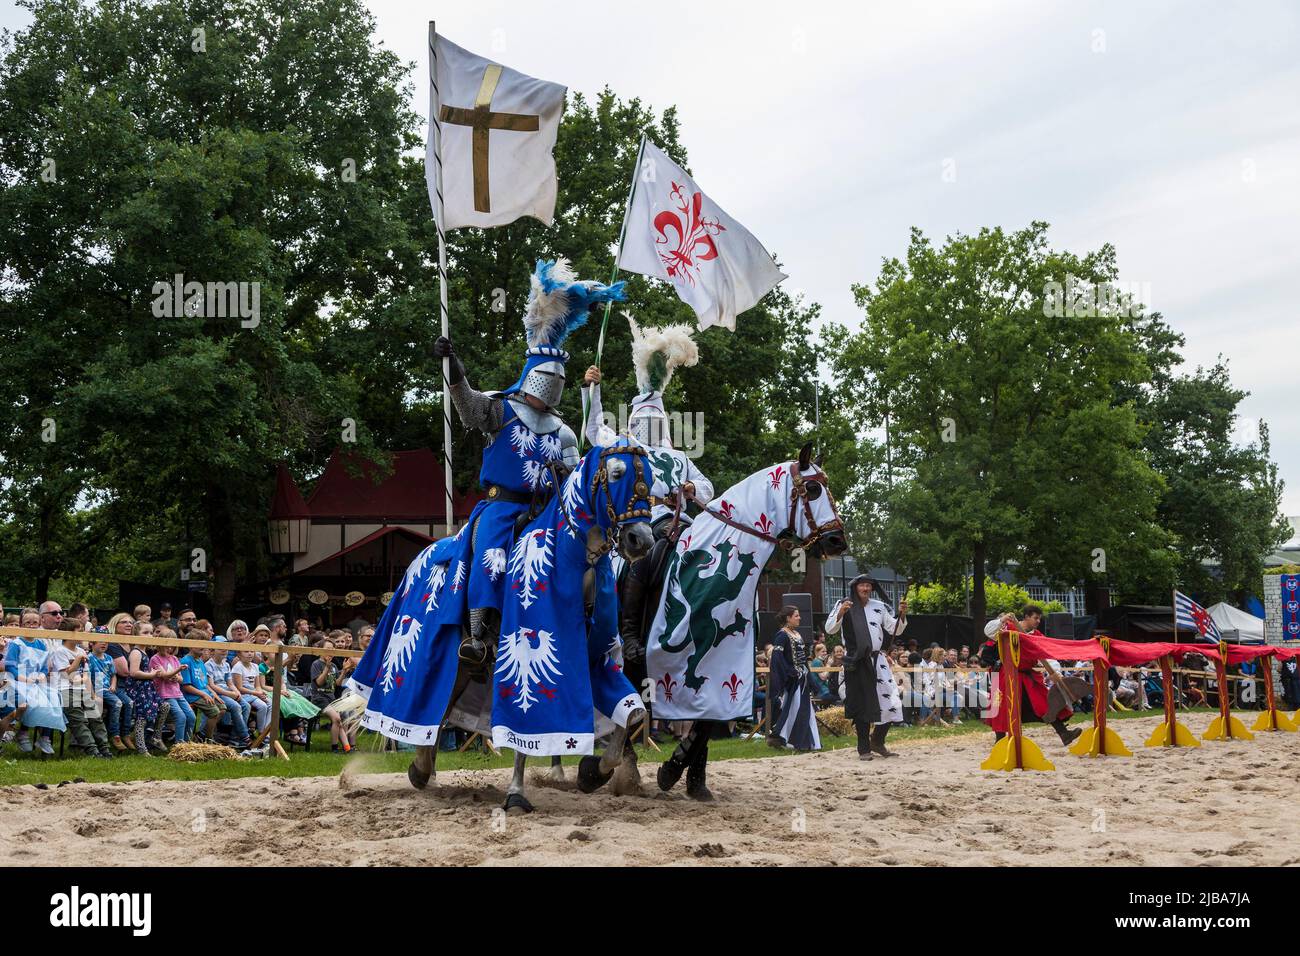 Pfingst-Spektakulum en Muelheim an der Ruhr, Alemania. Caballeros a caballo. Evento con un torneo medieval de caballeros con campamento y mercado de artesanía en Müga-Park cerca del castillo Schloss Broich. Foto de stock